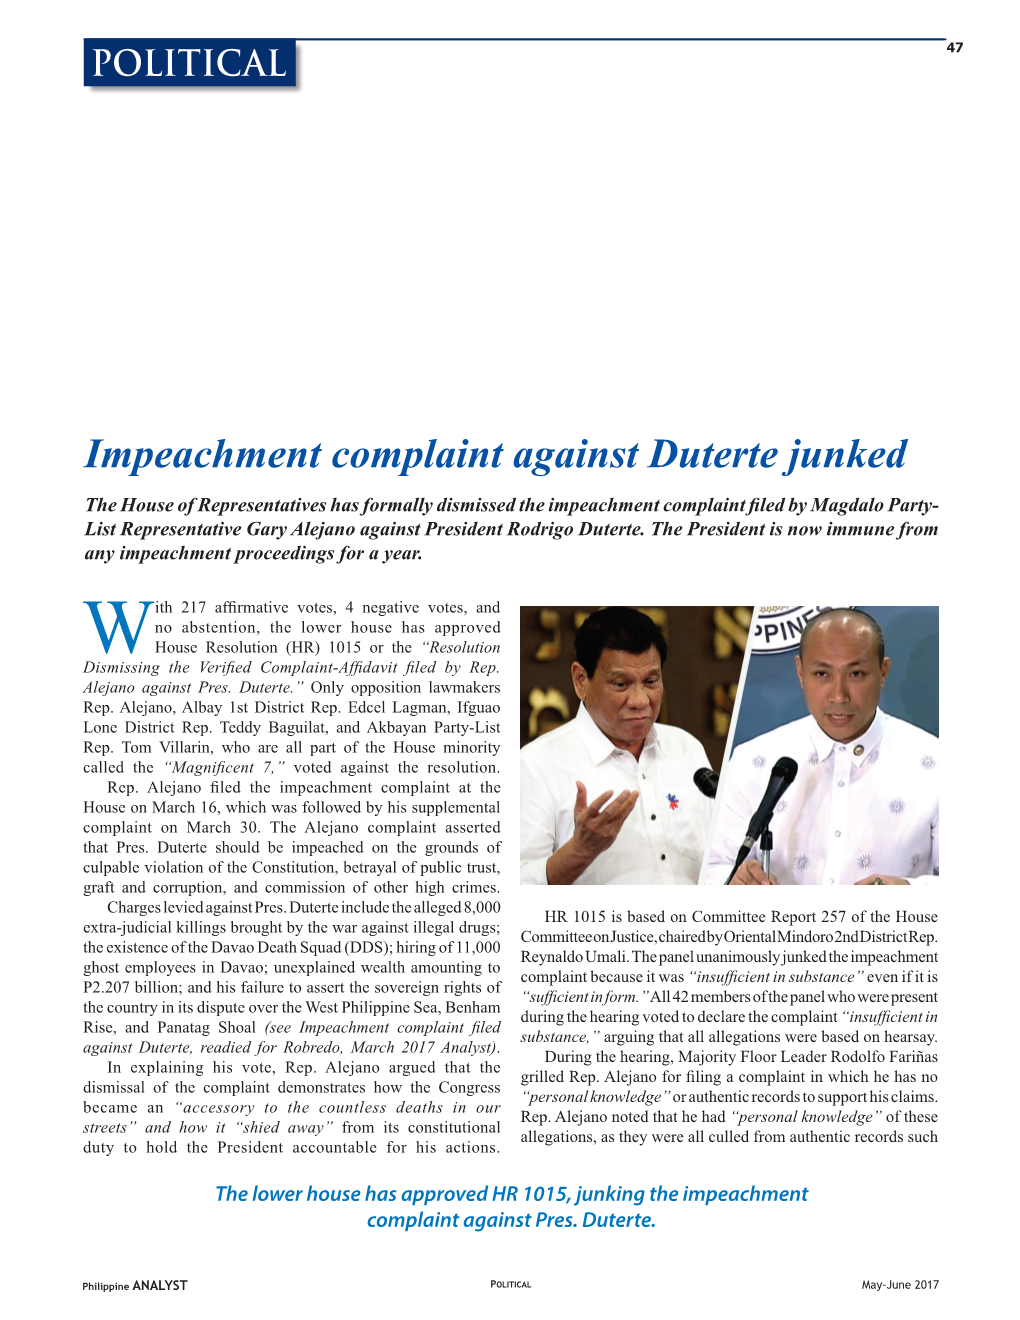 Impeachment Complaint Against Duterte Junked